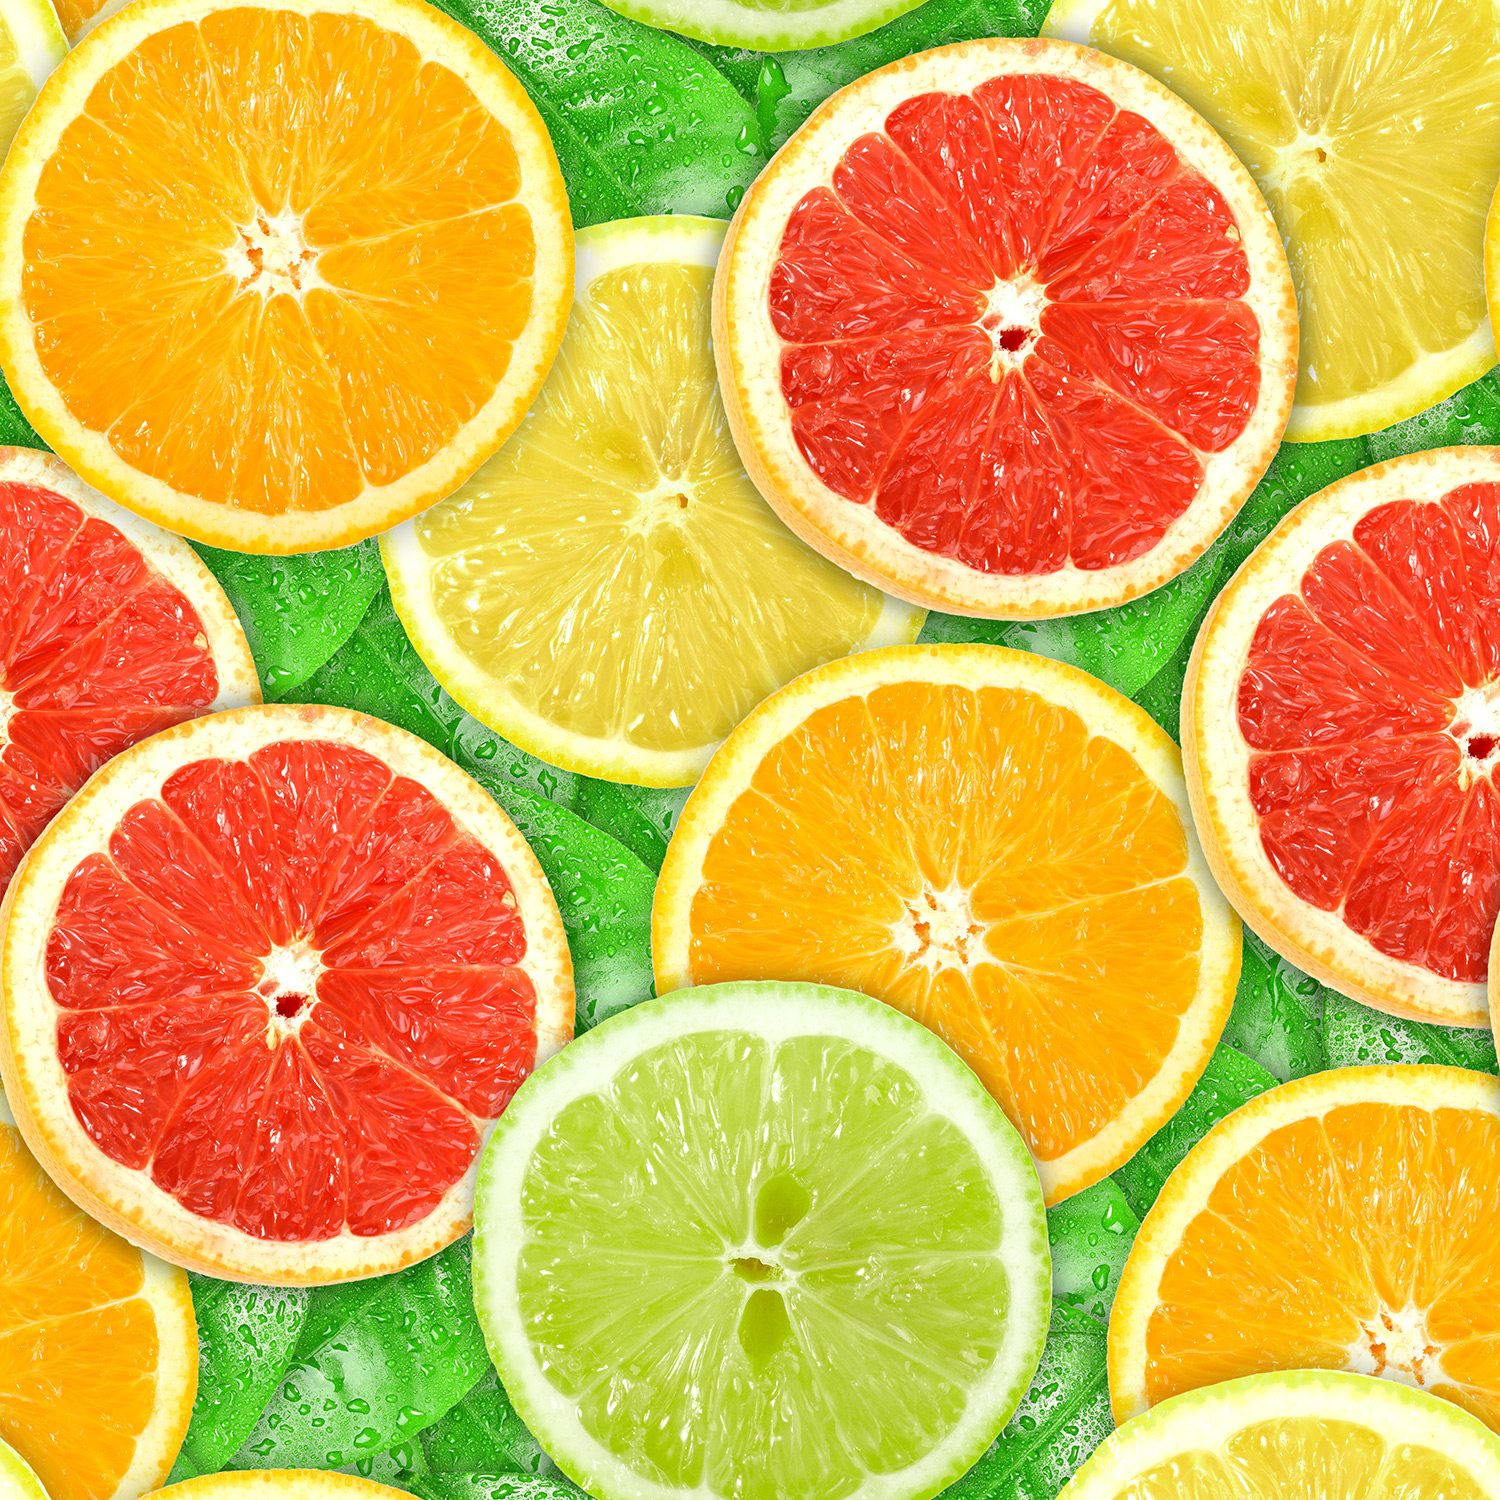 柑橘類の壁紙,ライム,柑橘類,キーライム,食物,フルーツ